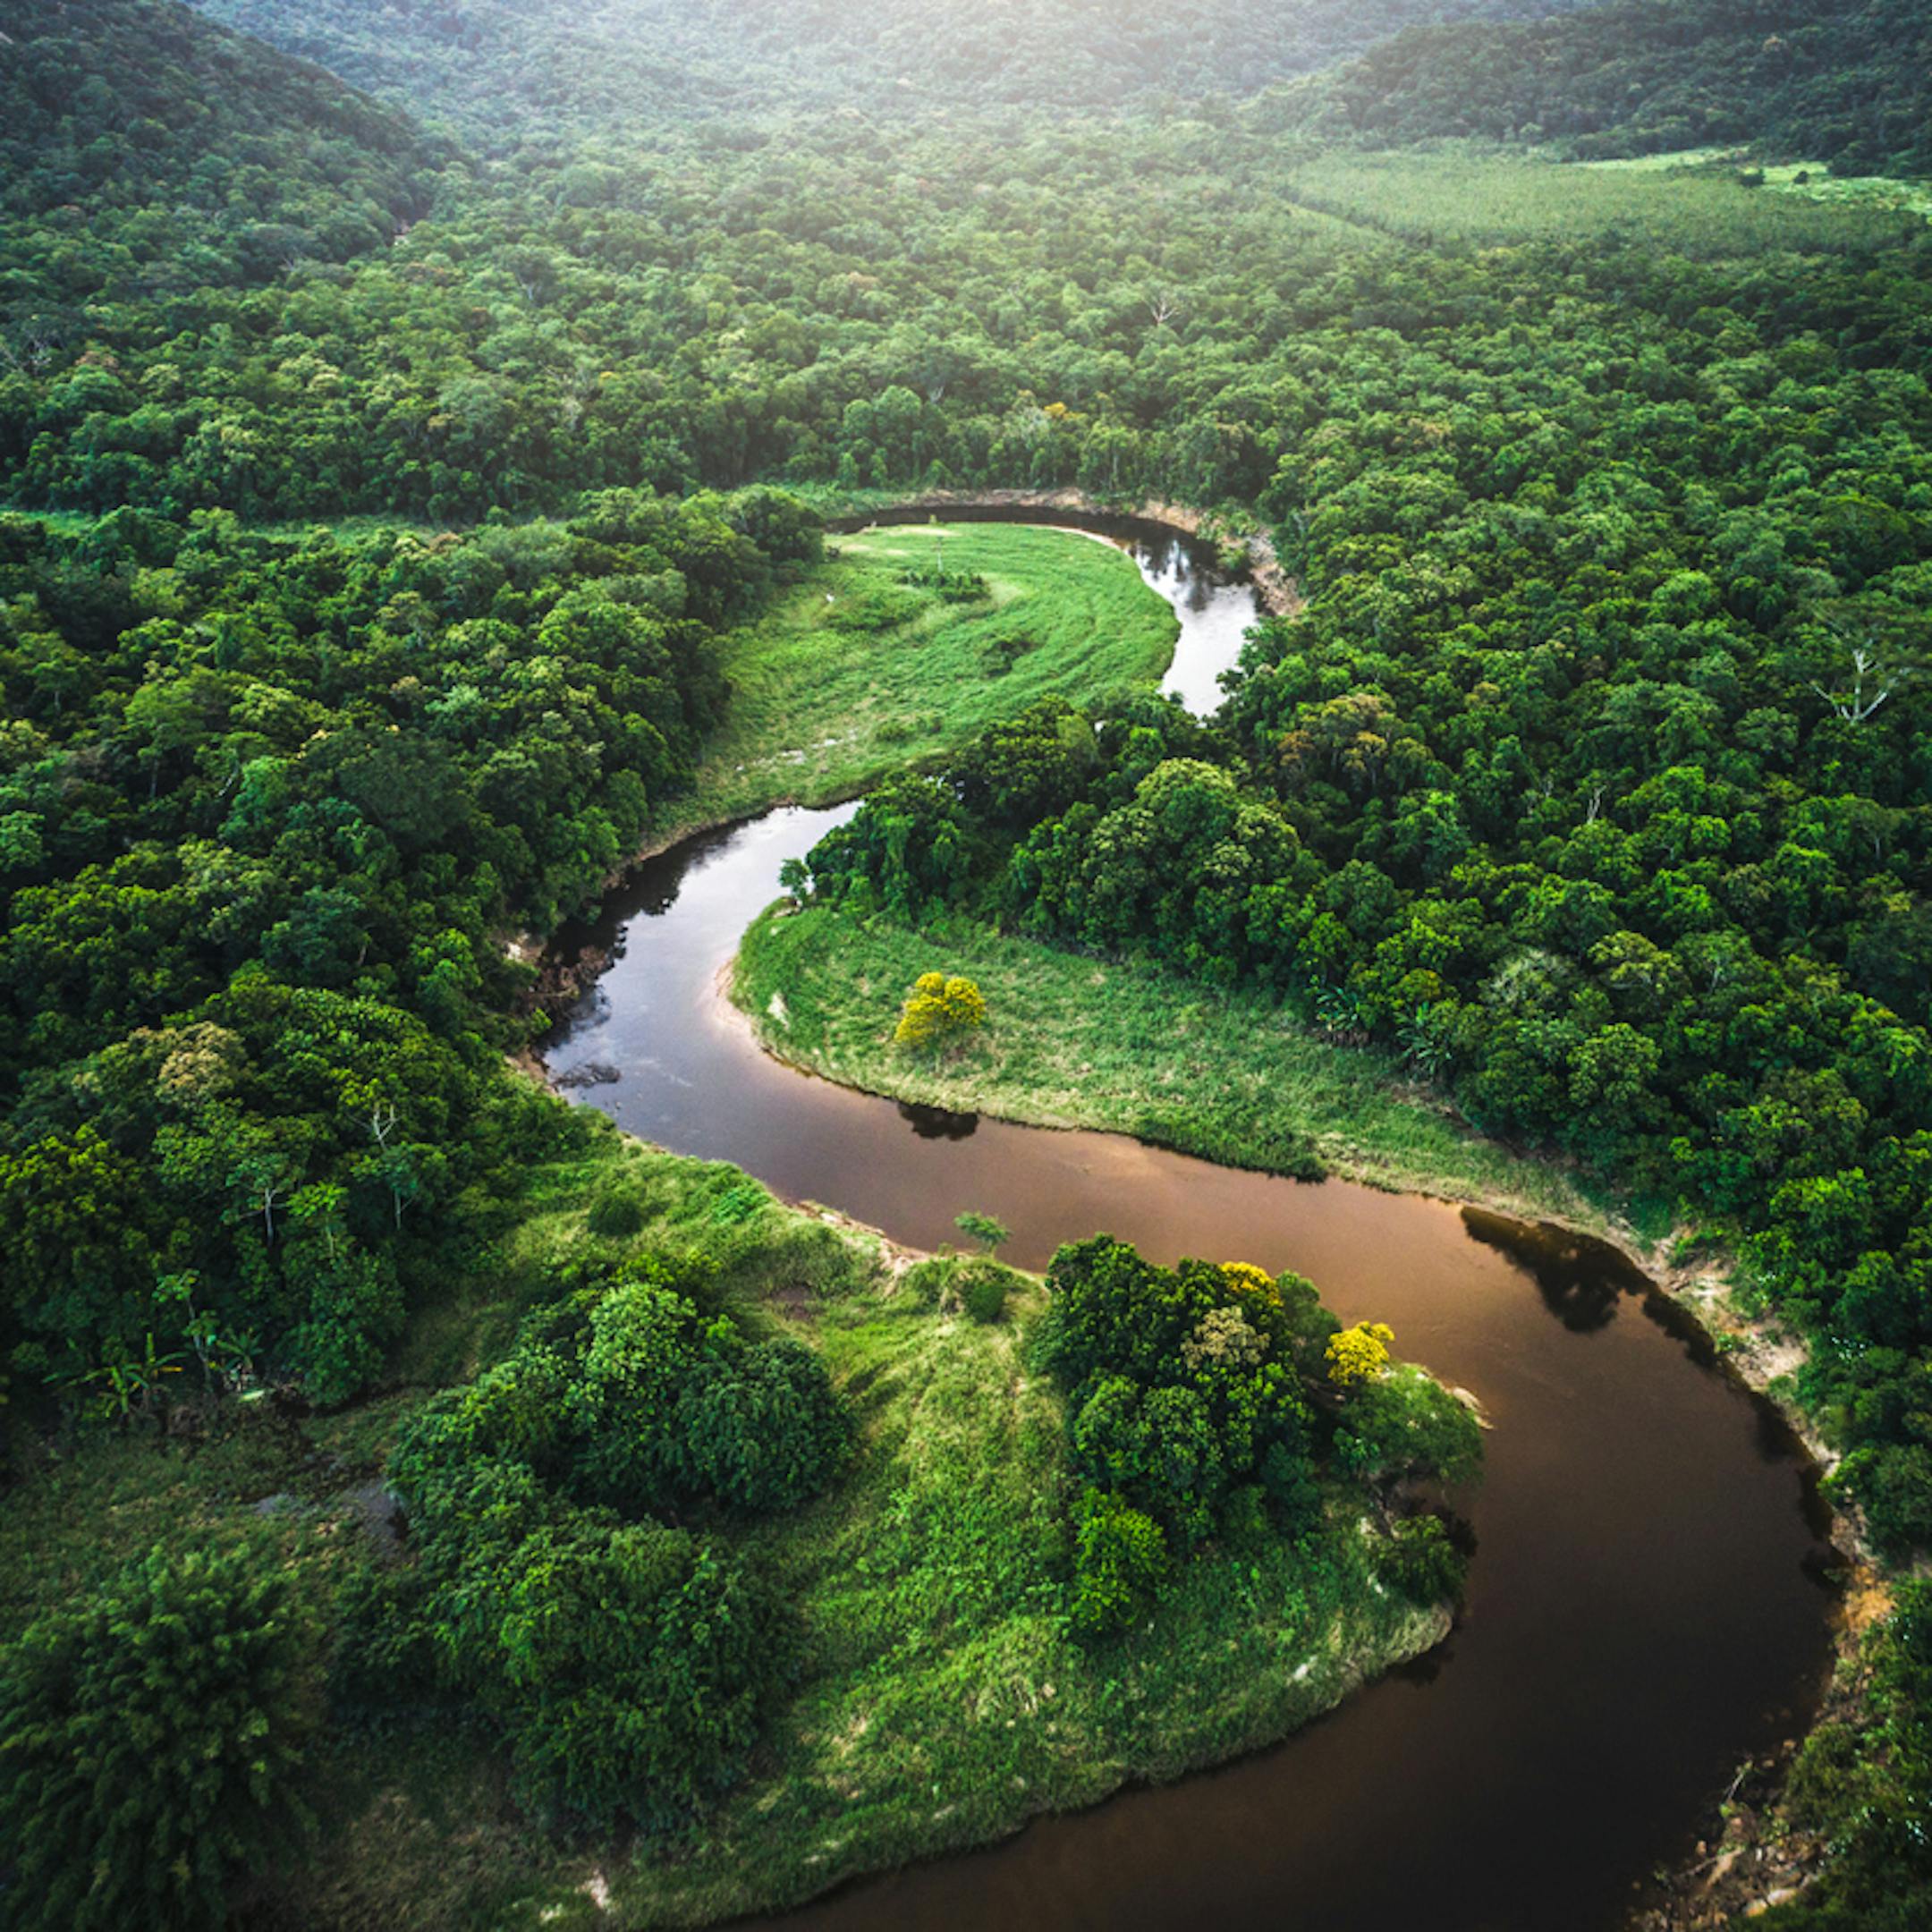 Vue aérienne de la forêt Amazonienne au Brésil